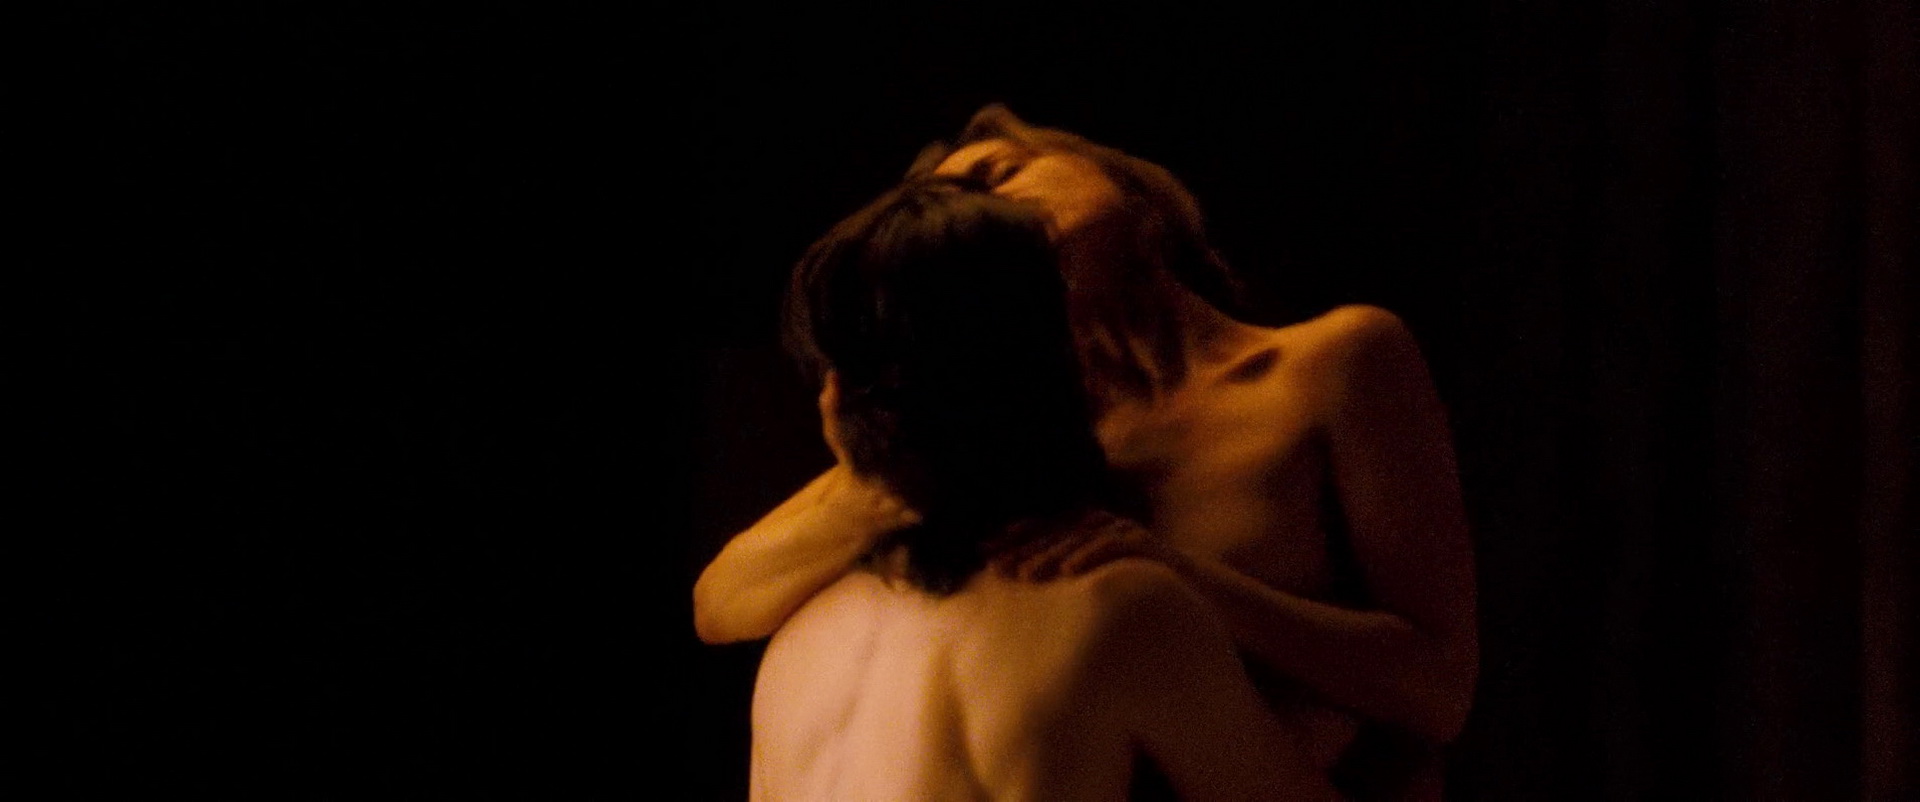 Eliza Dushku - Locked In (2010) HD 1080p